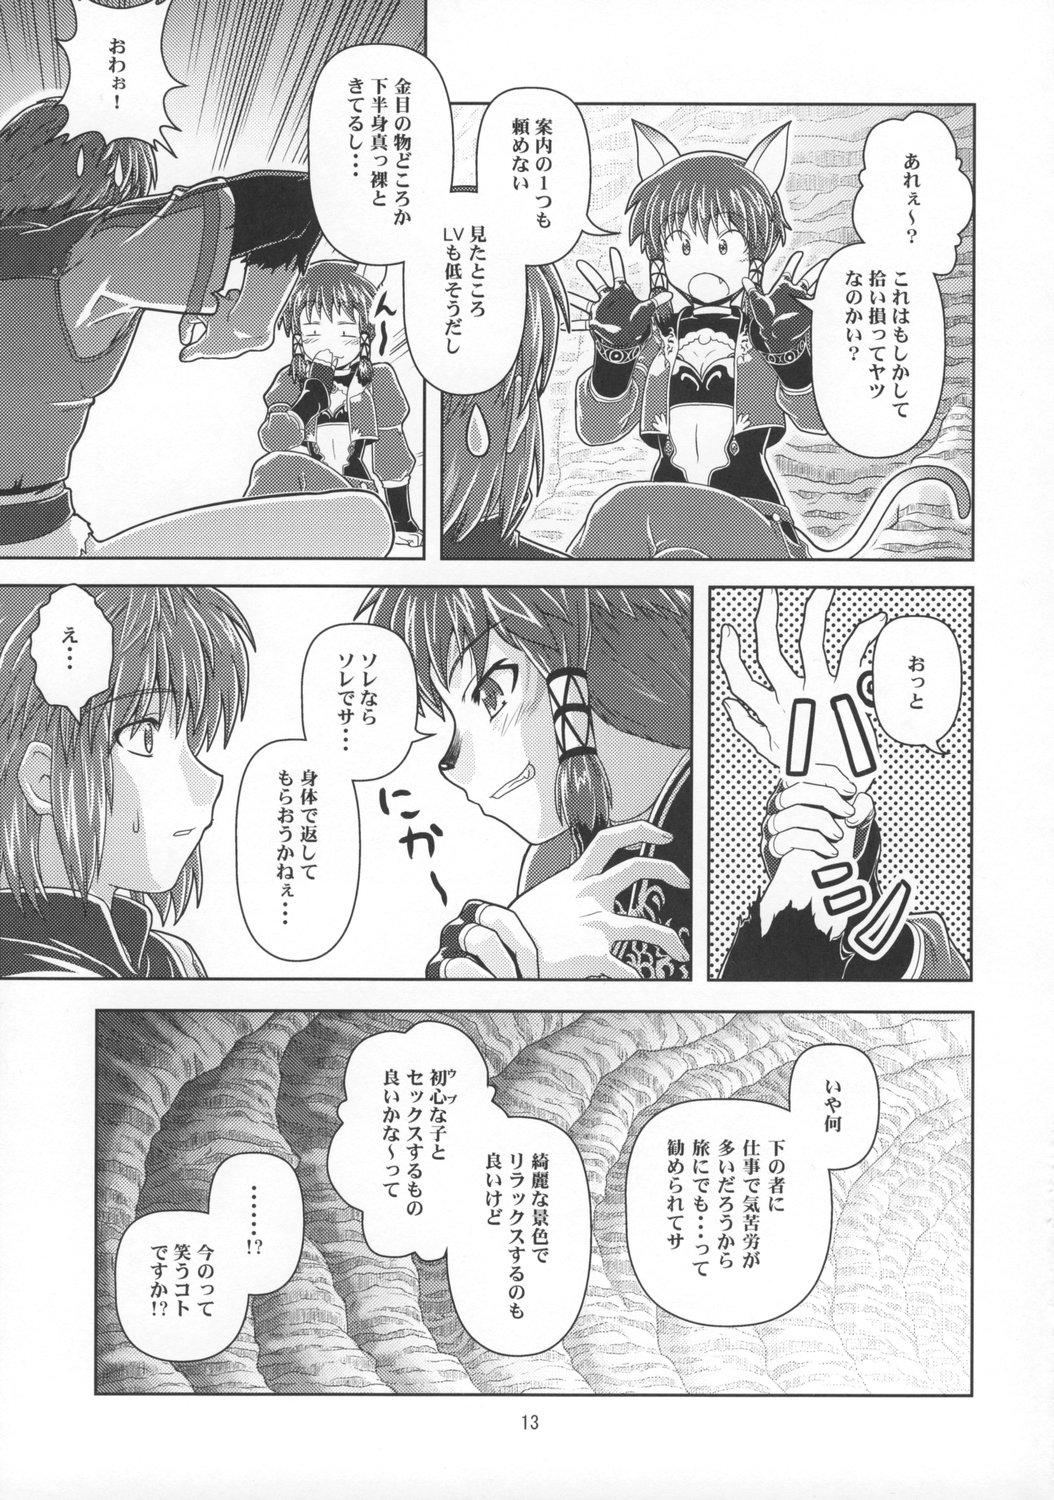 Verga Anoko wa F4 - Final fantasy xi Cbt - Page 12